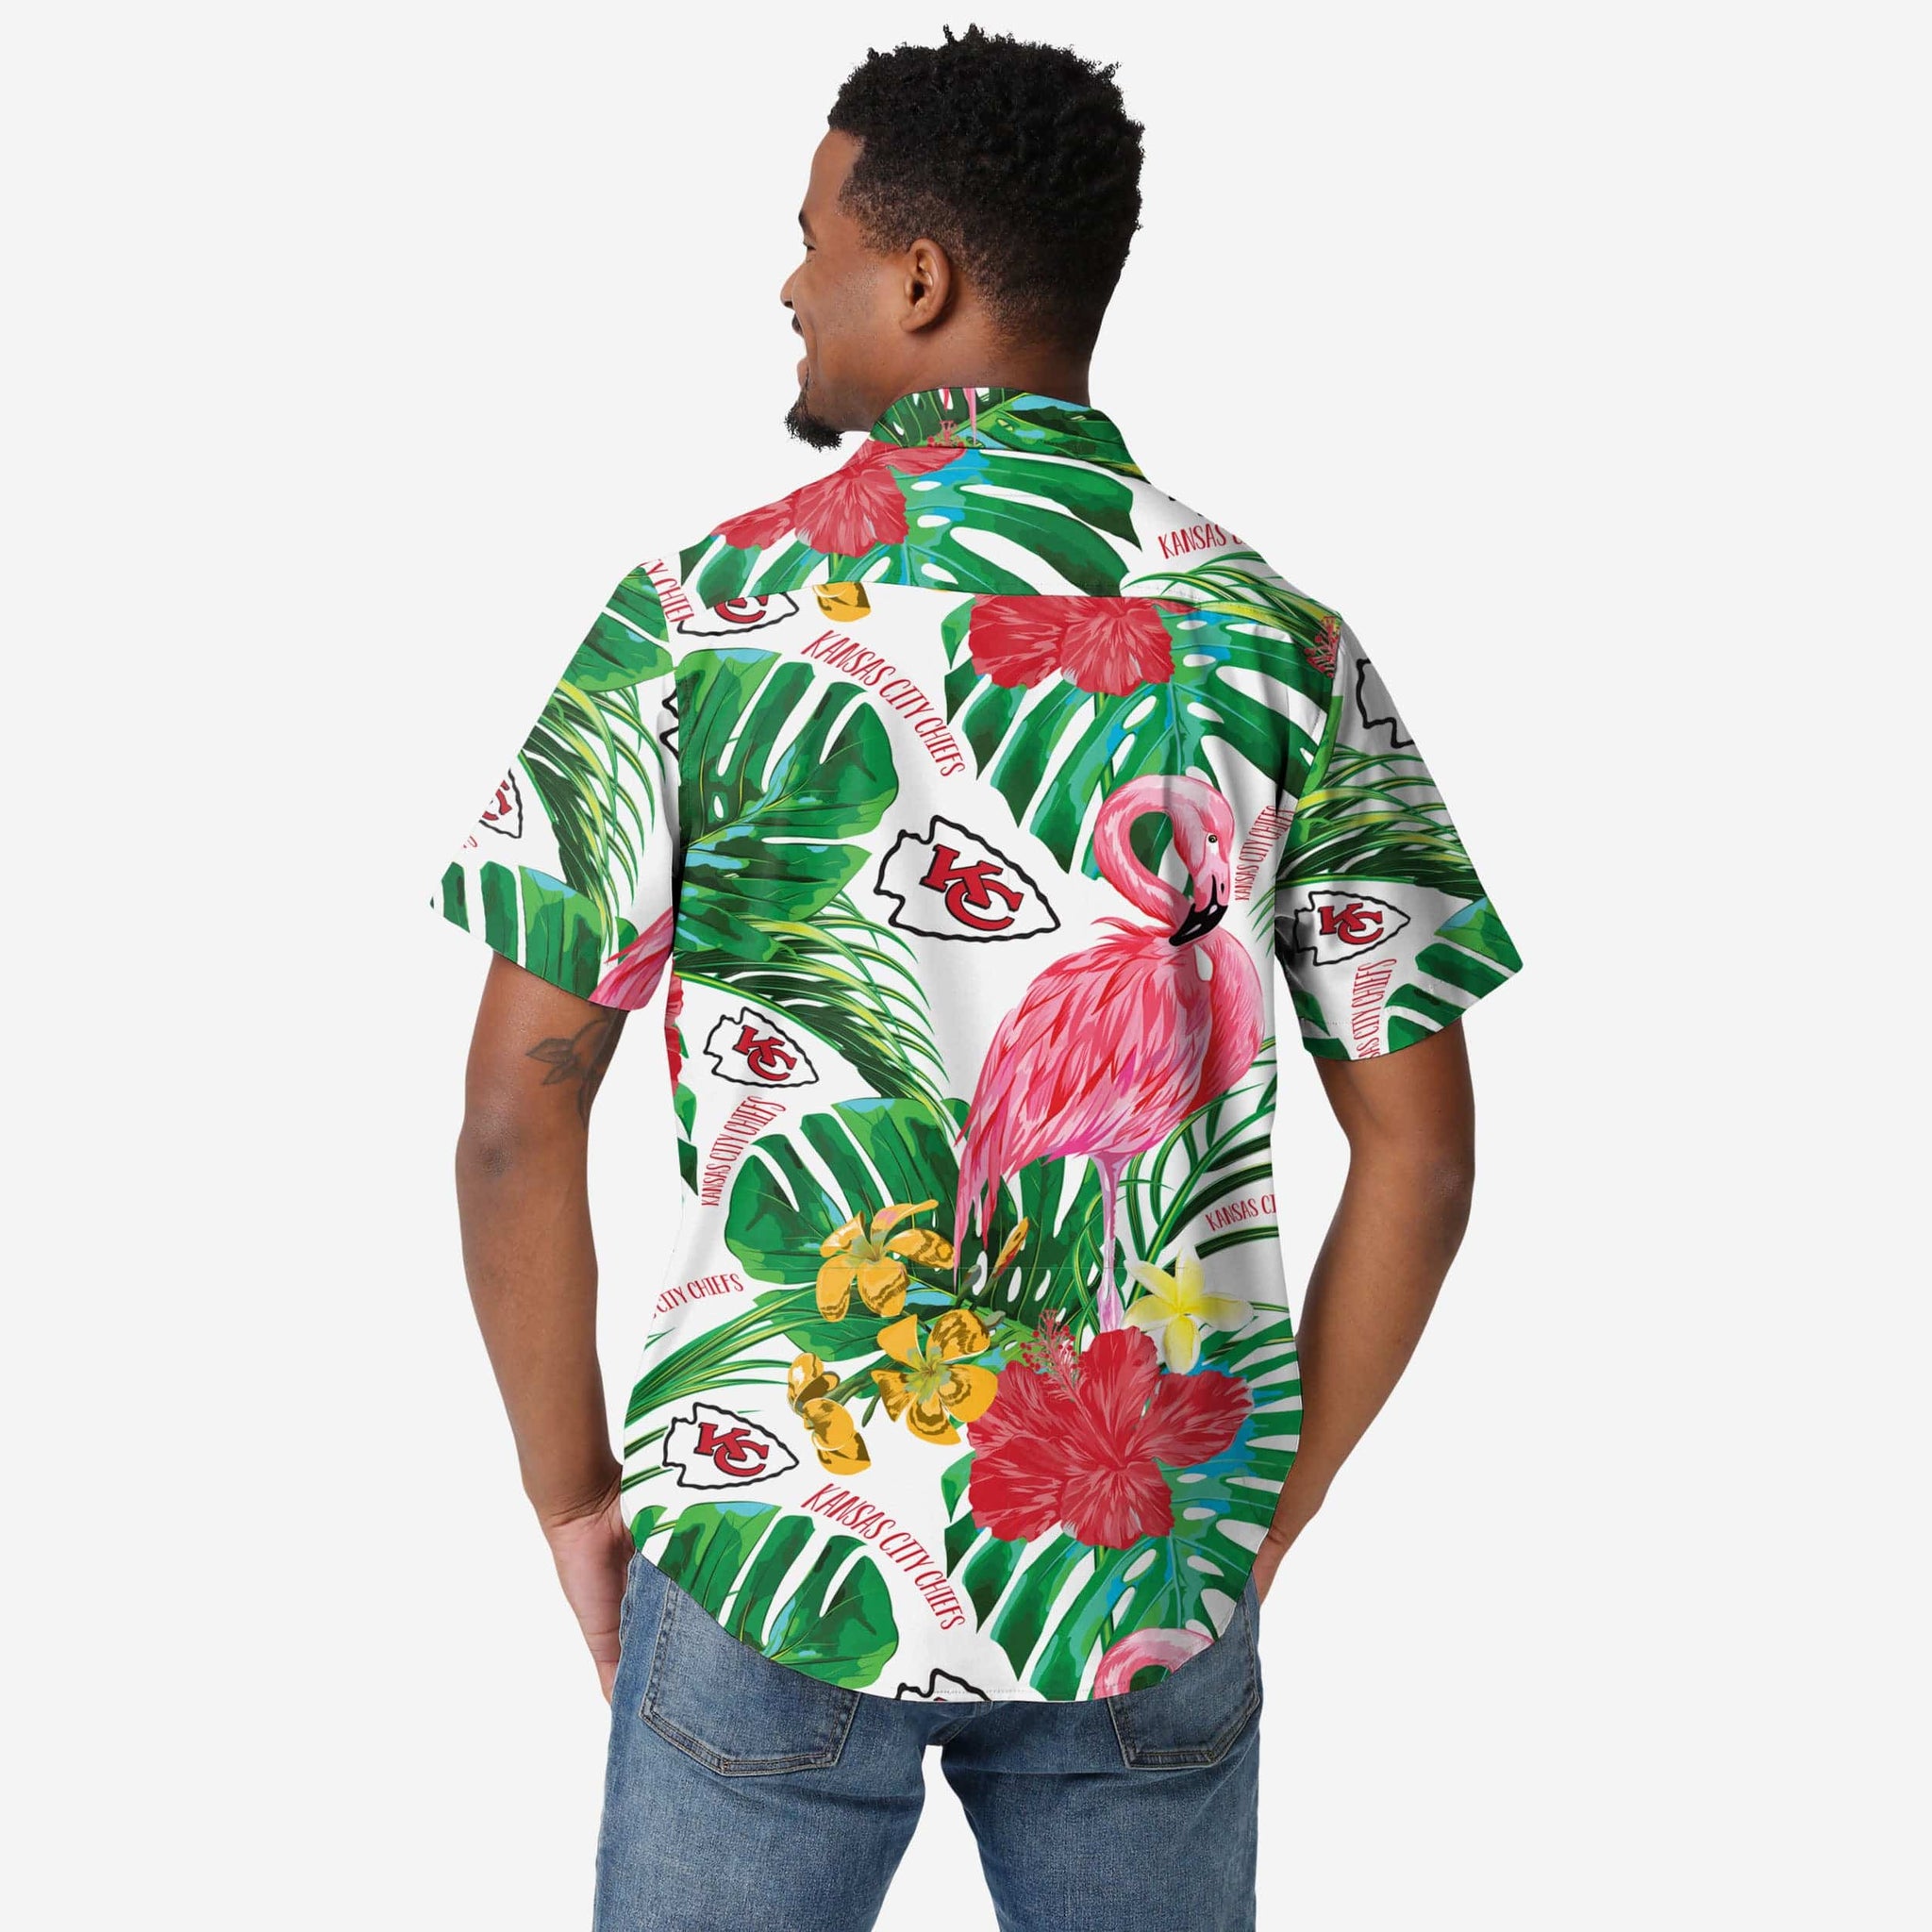 Kansas City Chiefs NFL Baseball Tropical Flower Baseball Jersey Shirt